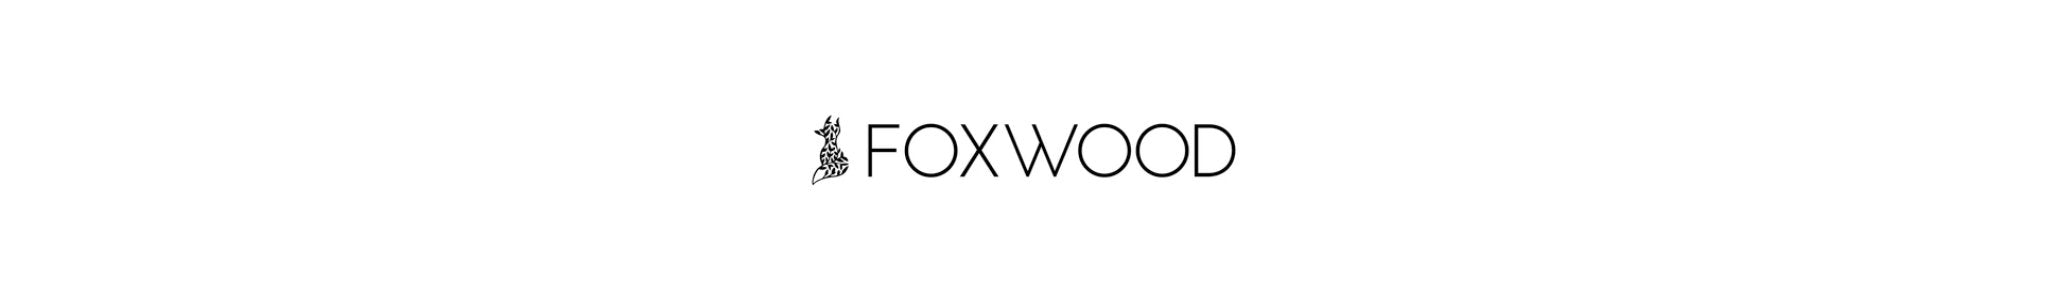 FOXWOOD